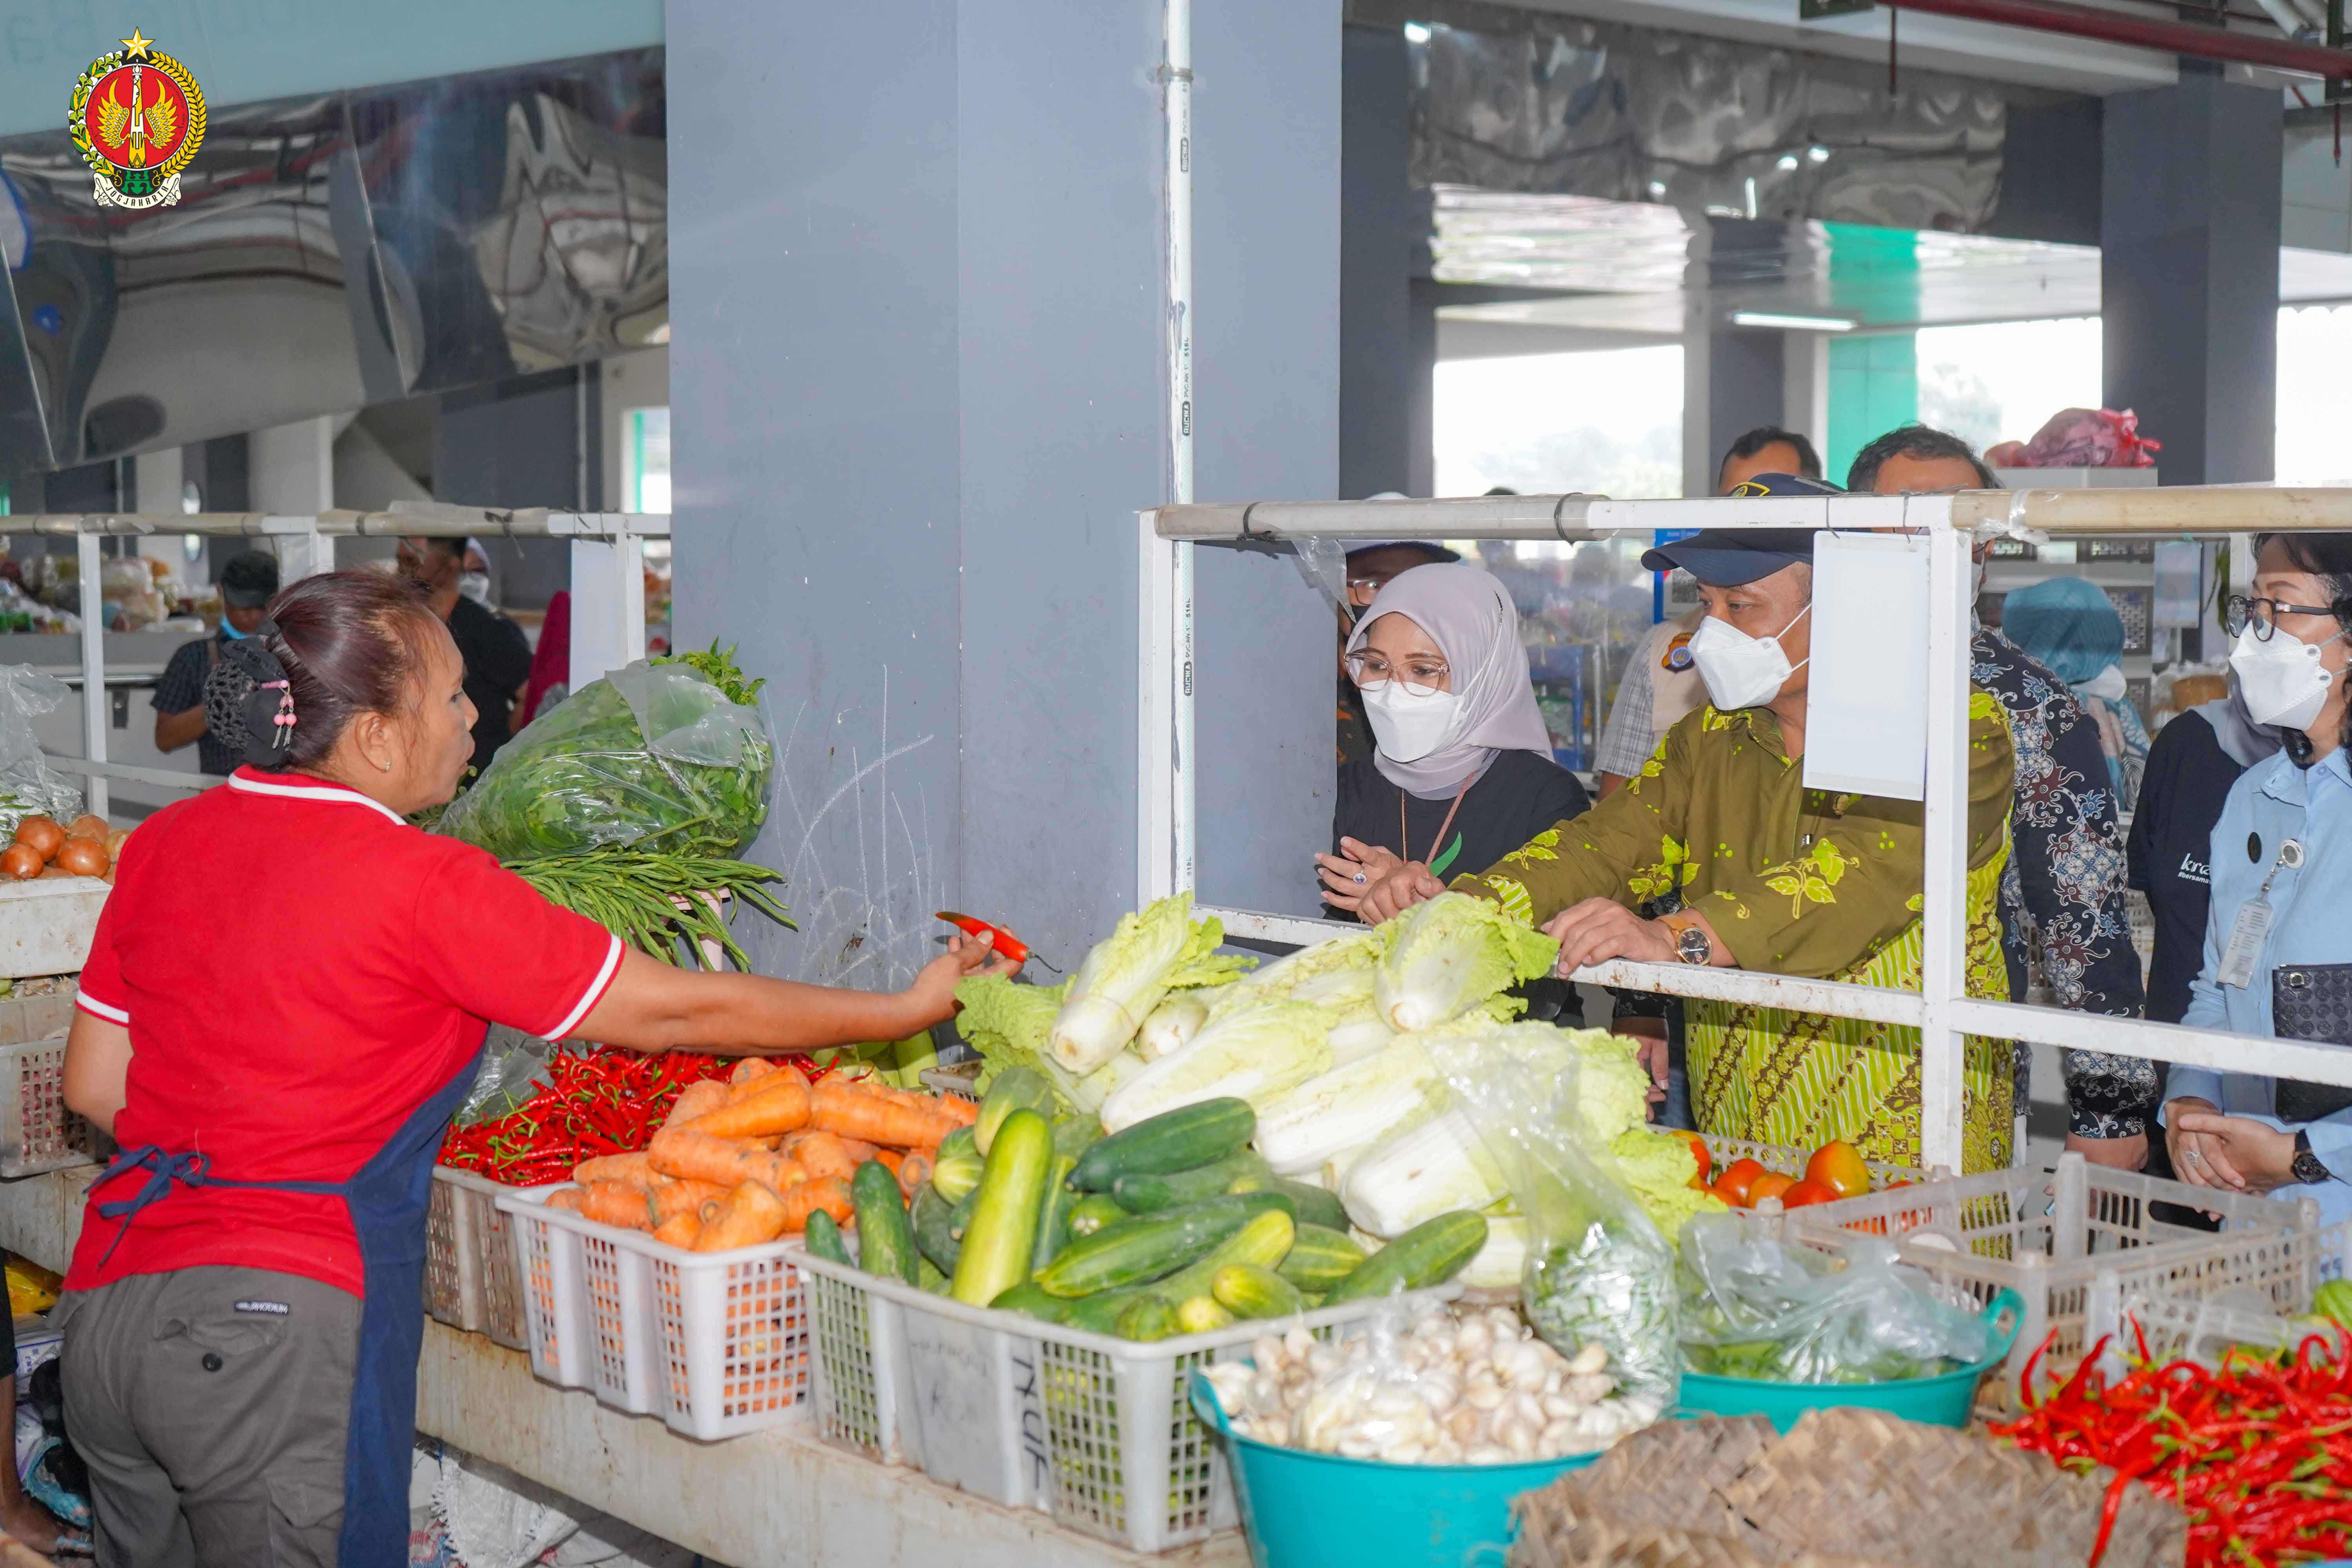  Harga Komoditas Pangan di Pasar Prawirotaman Relatif Lebih Murah